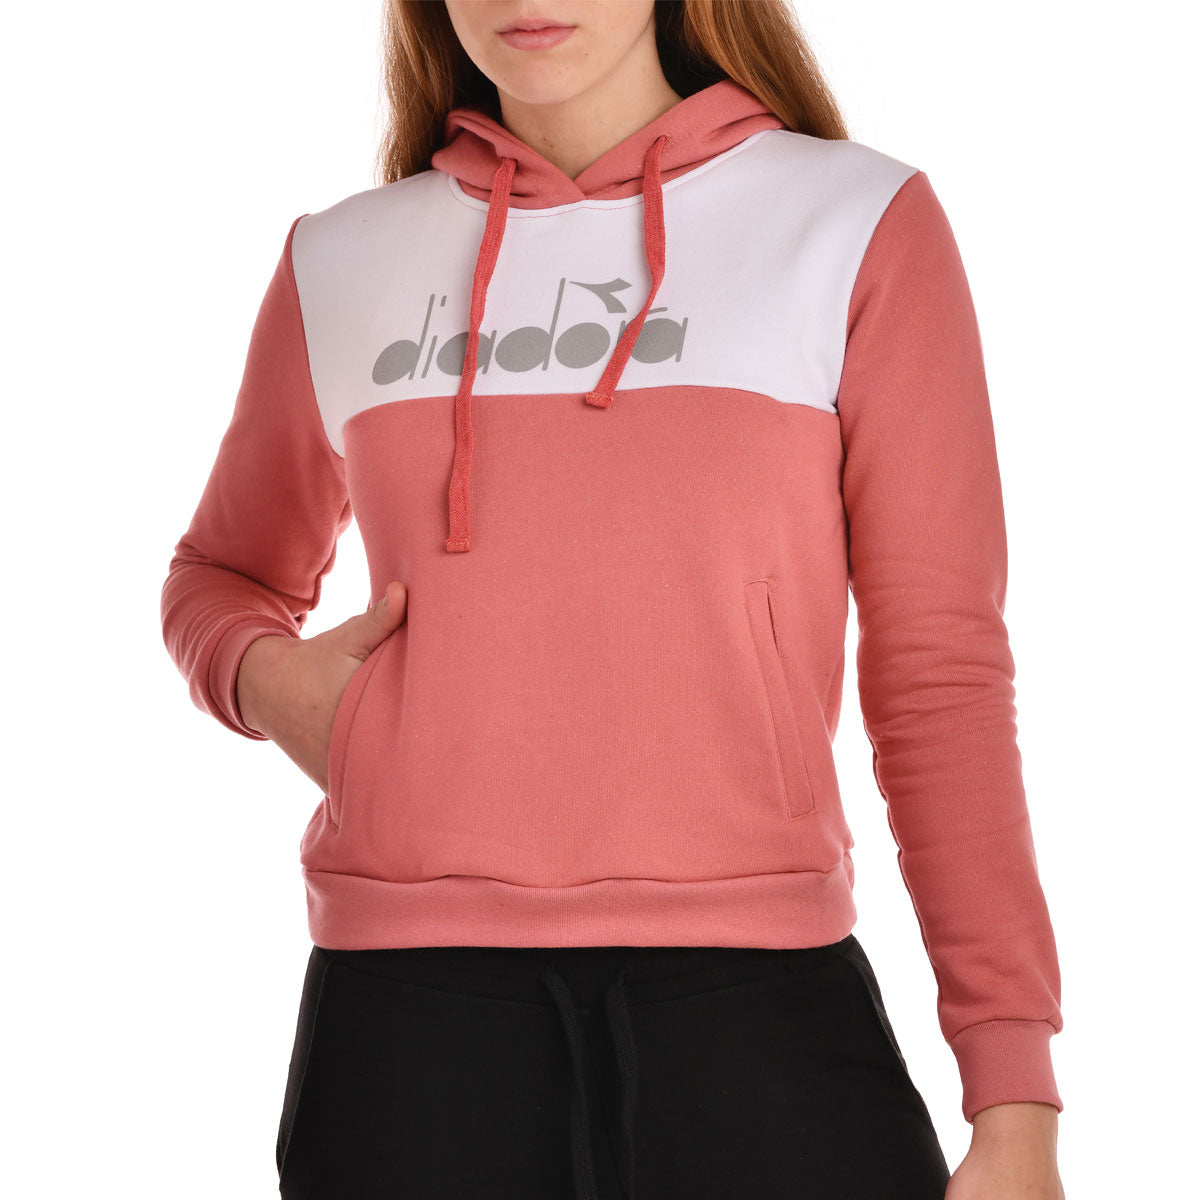 walda-hoodie#rosa-pastel-blanco